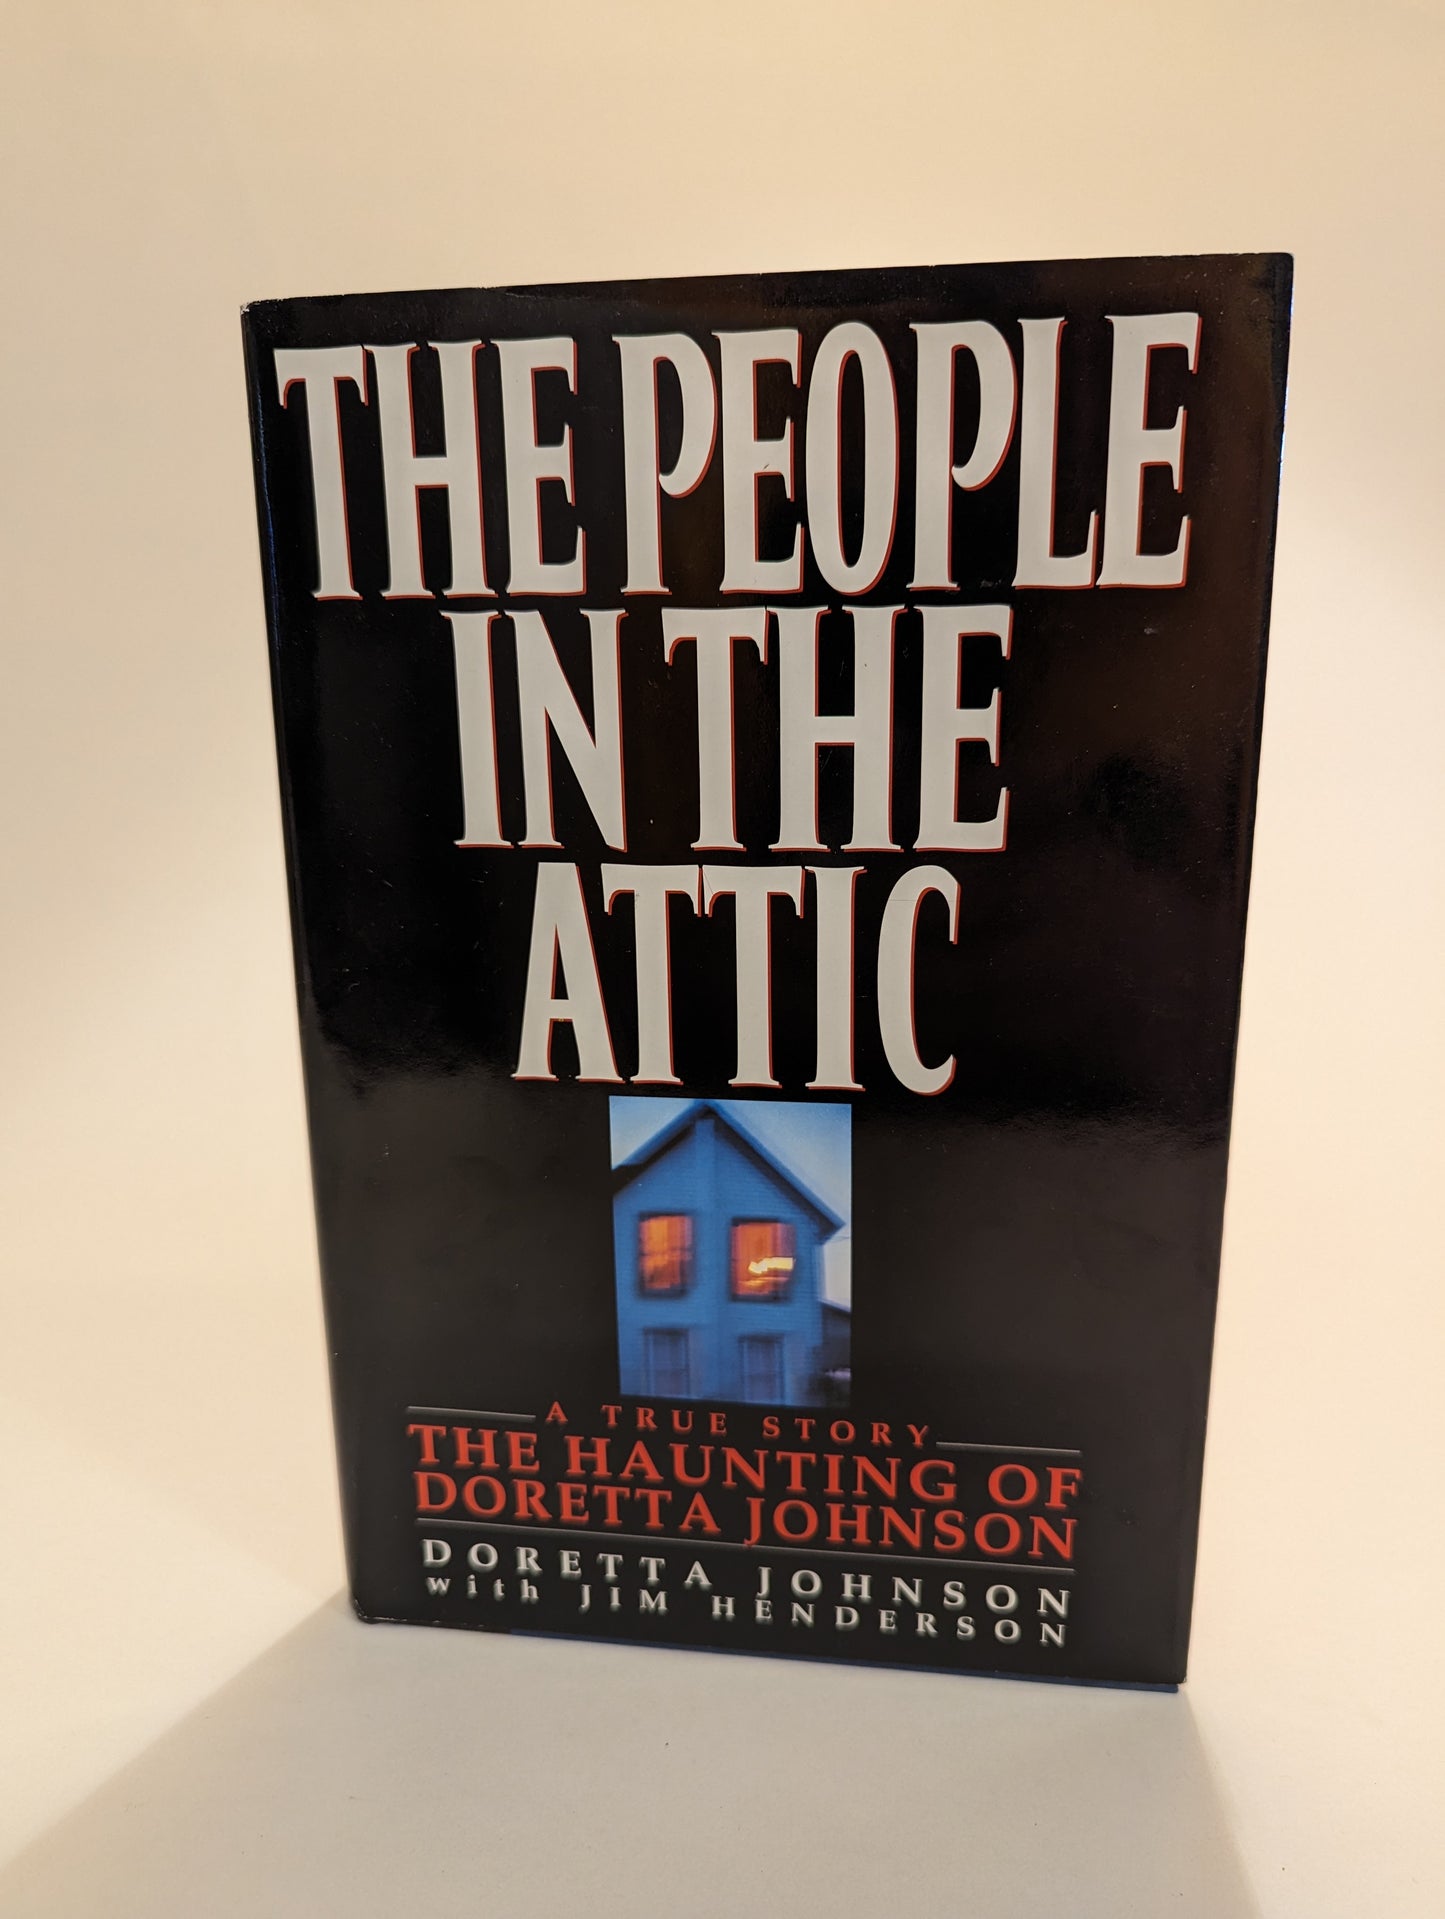 The People in the Attic: The Haunting of Doretta Johnson [Doretta Johnson & Jim Henderson]